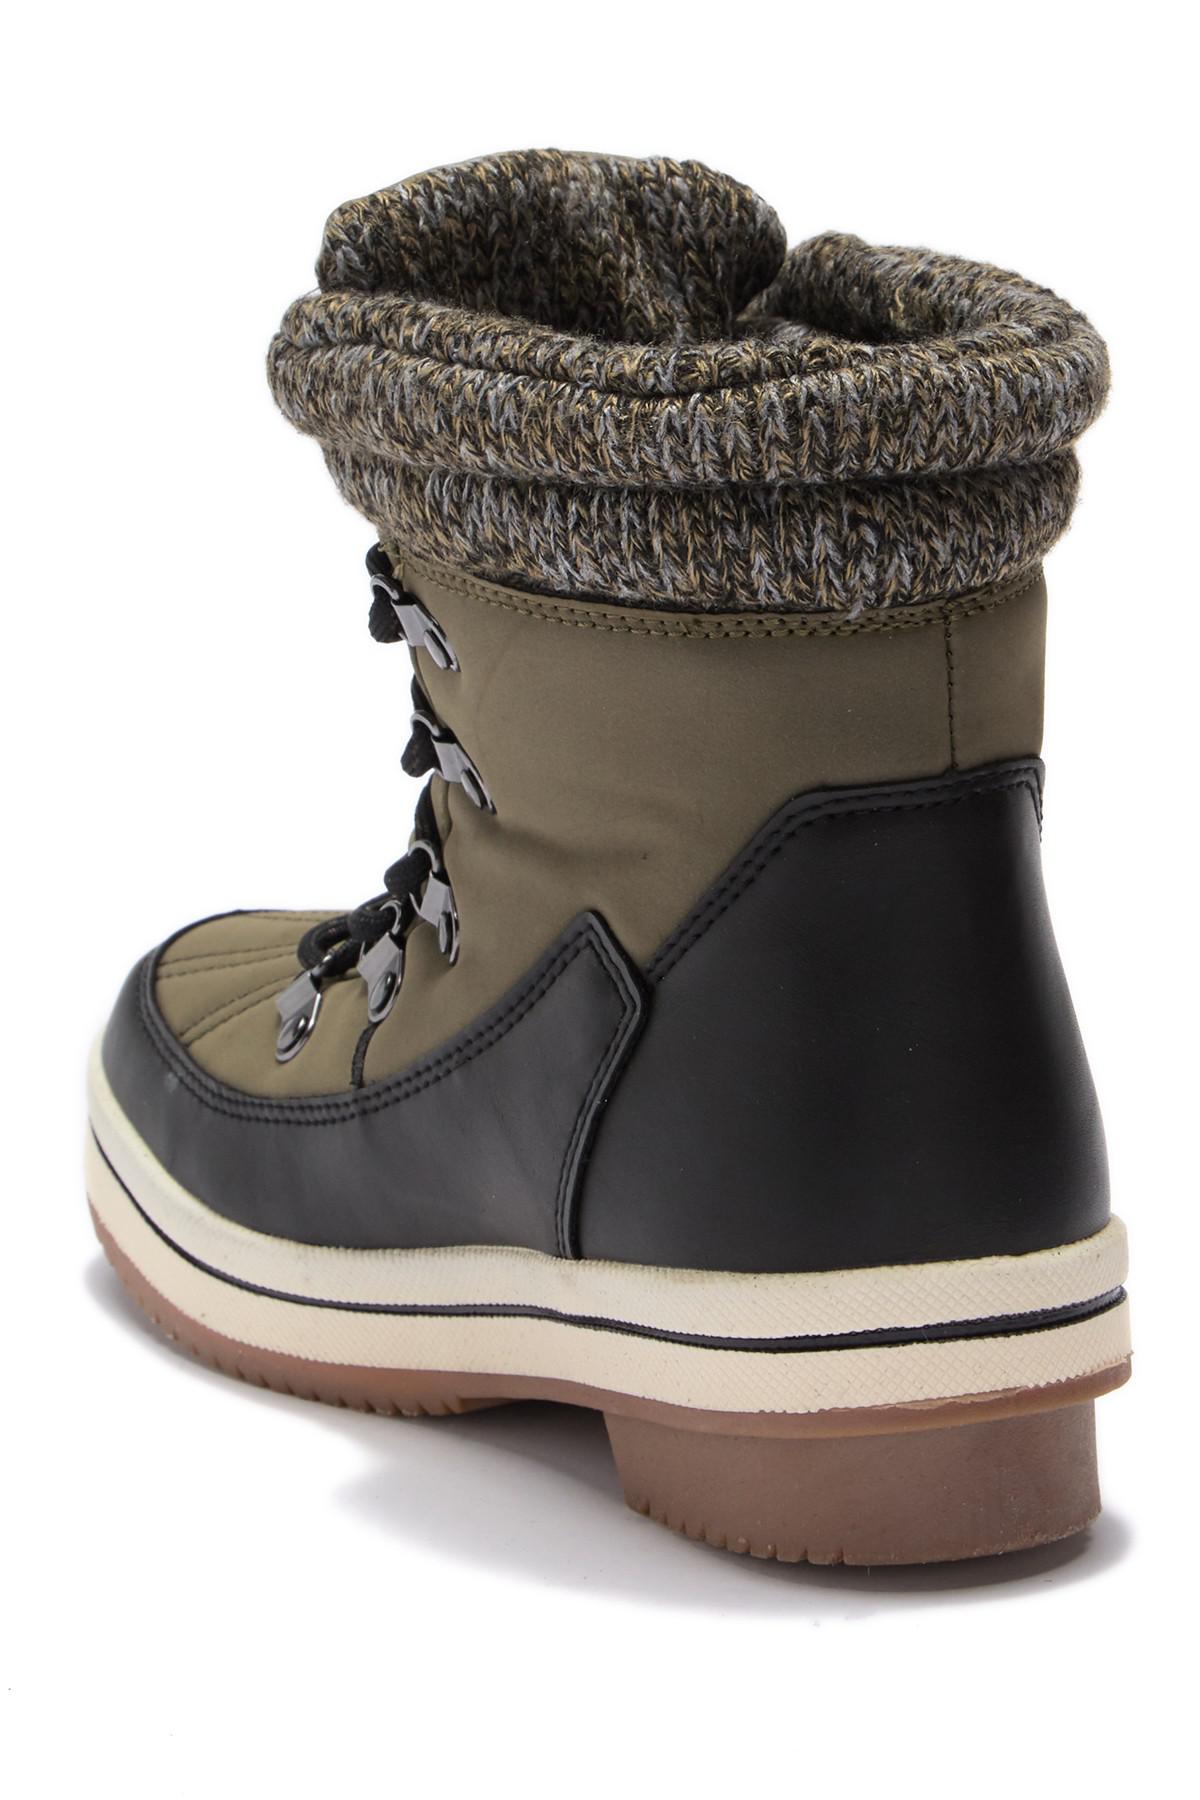 aldo ethialia waterproof fleece lined snow boot